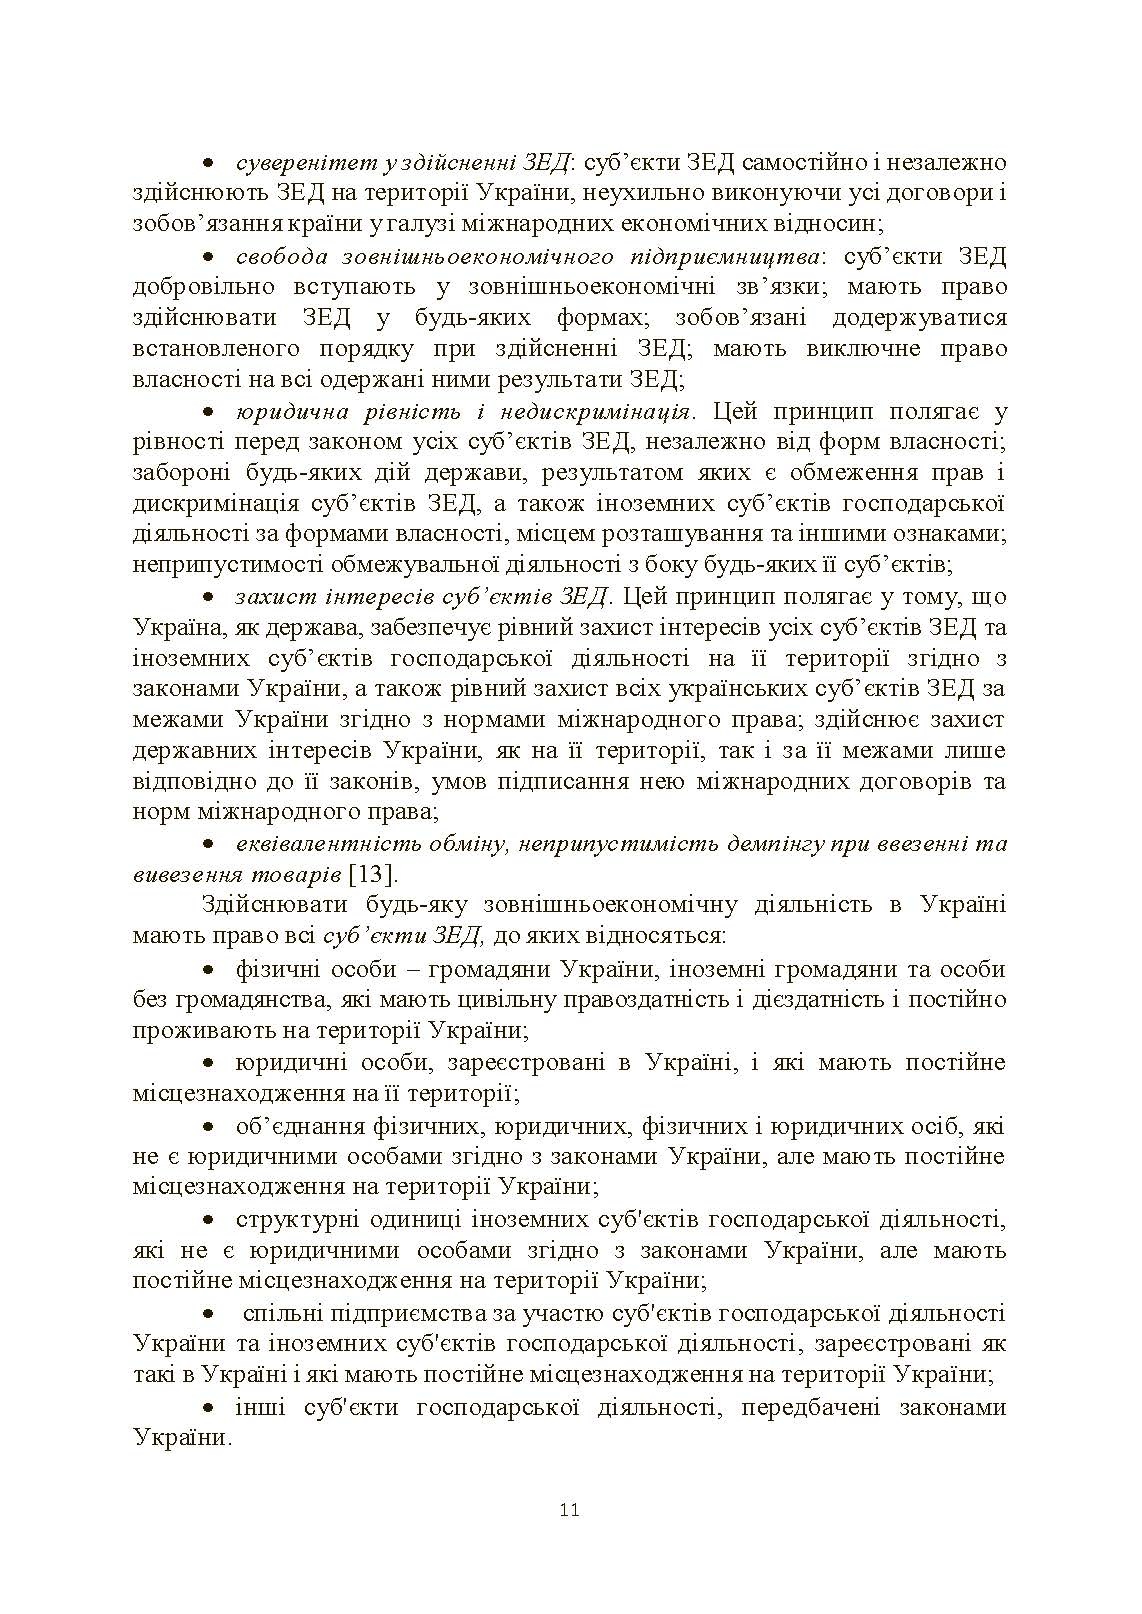 Основи зовнішньоекономічної діяльності підприємств (2022 год)). Автор — Козак Ю.Г.. 